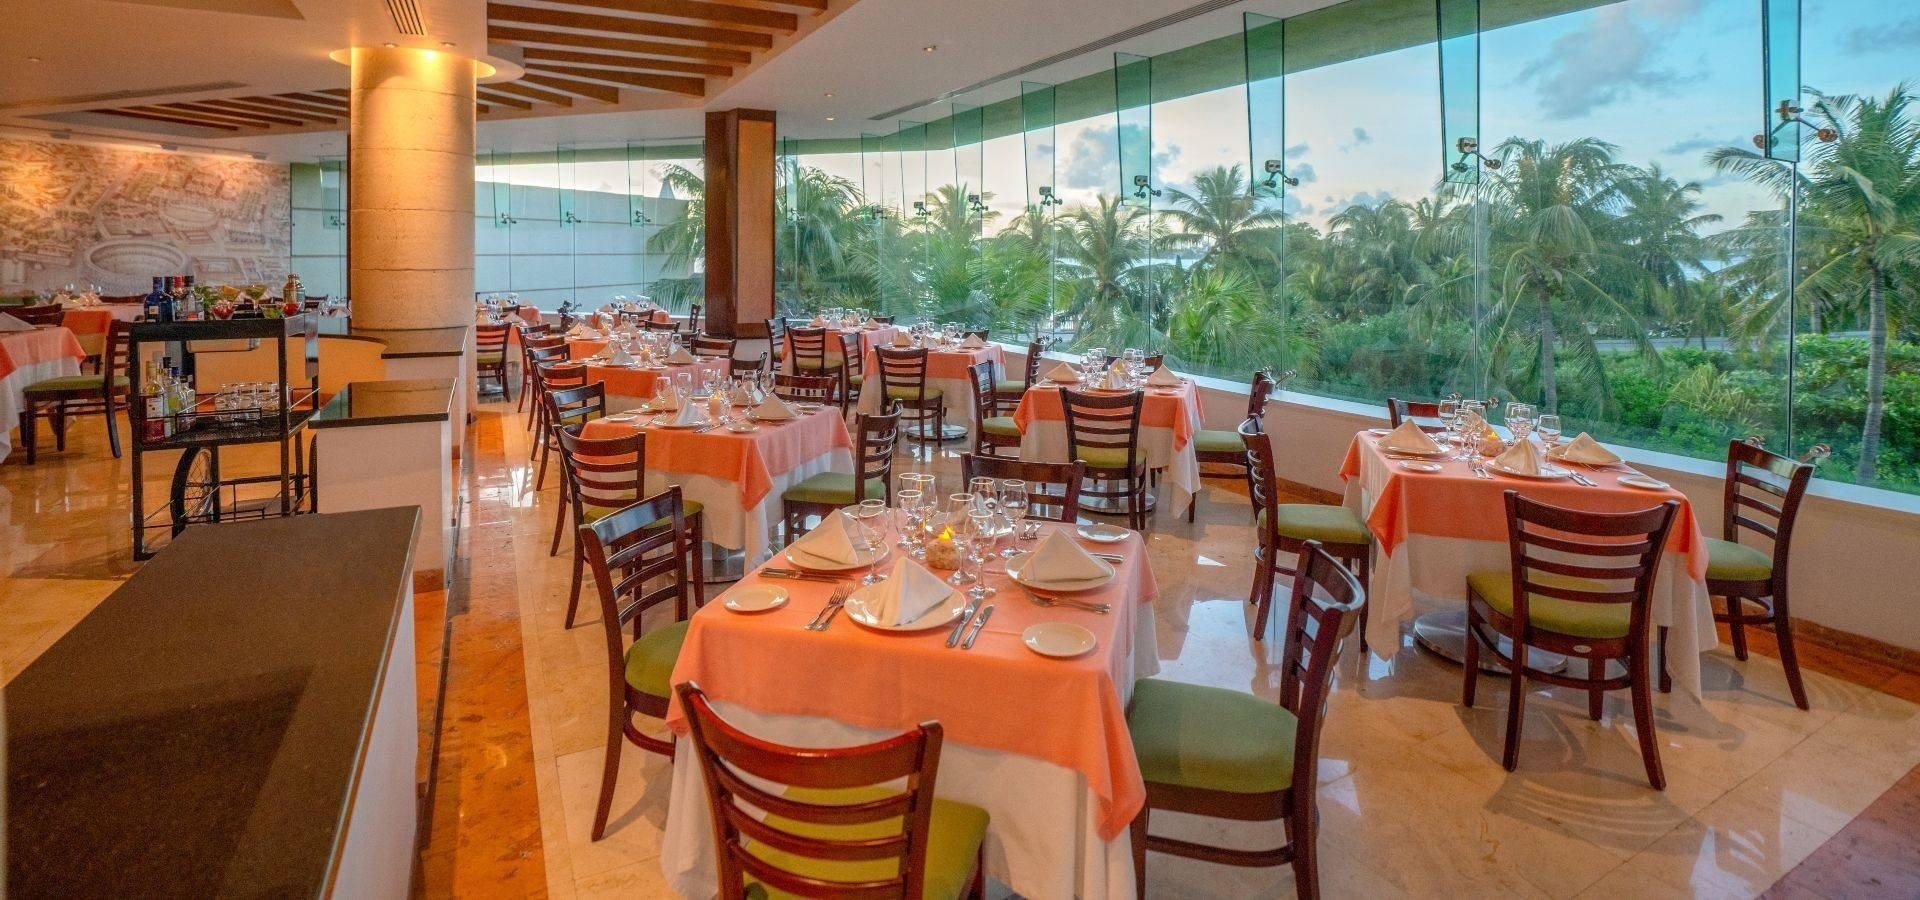 Restaurante El Mirador con vistas a jardín de palmeras del Hotel Grand Park Royal Cancún